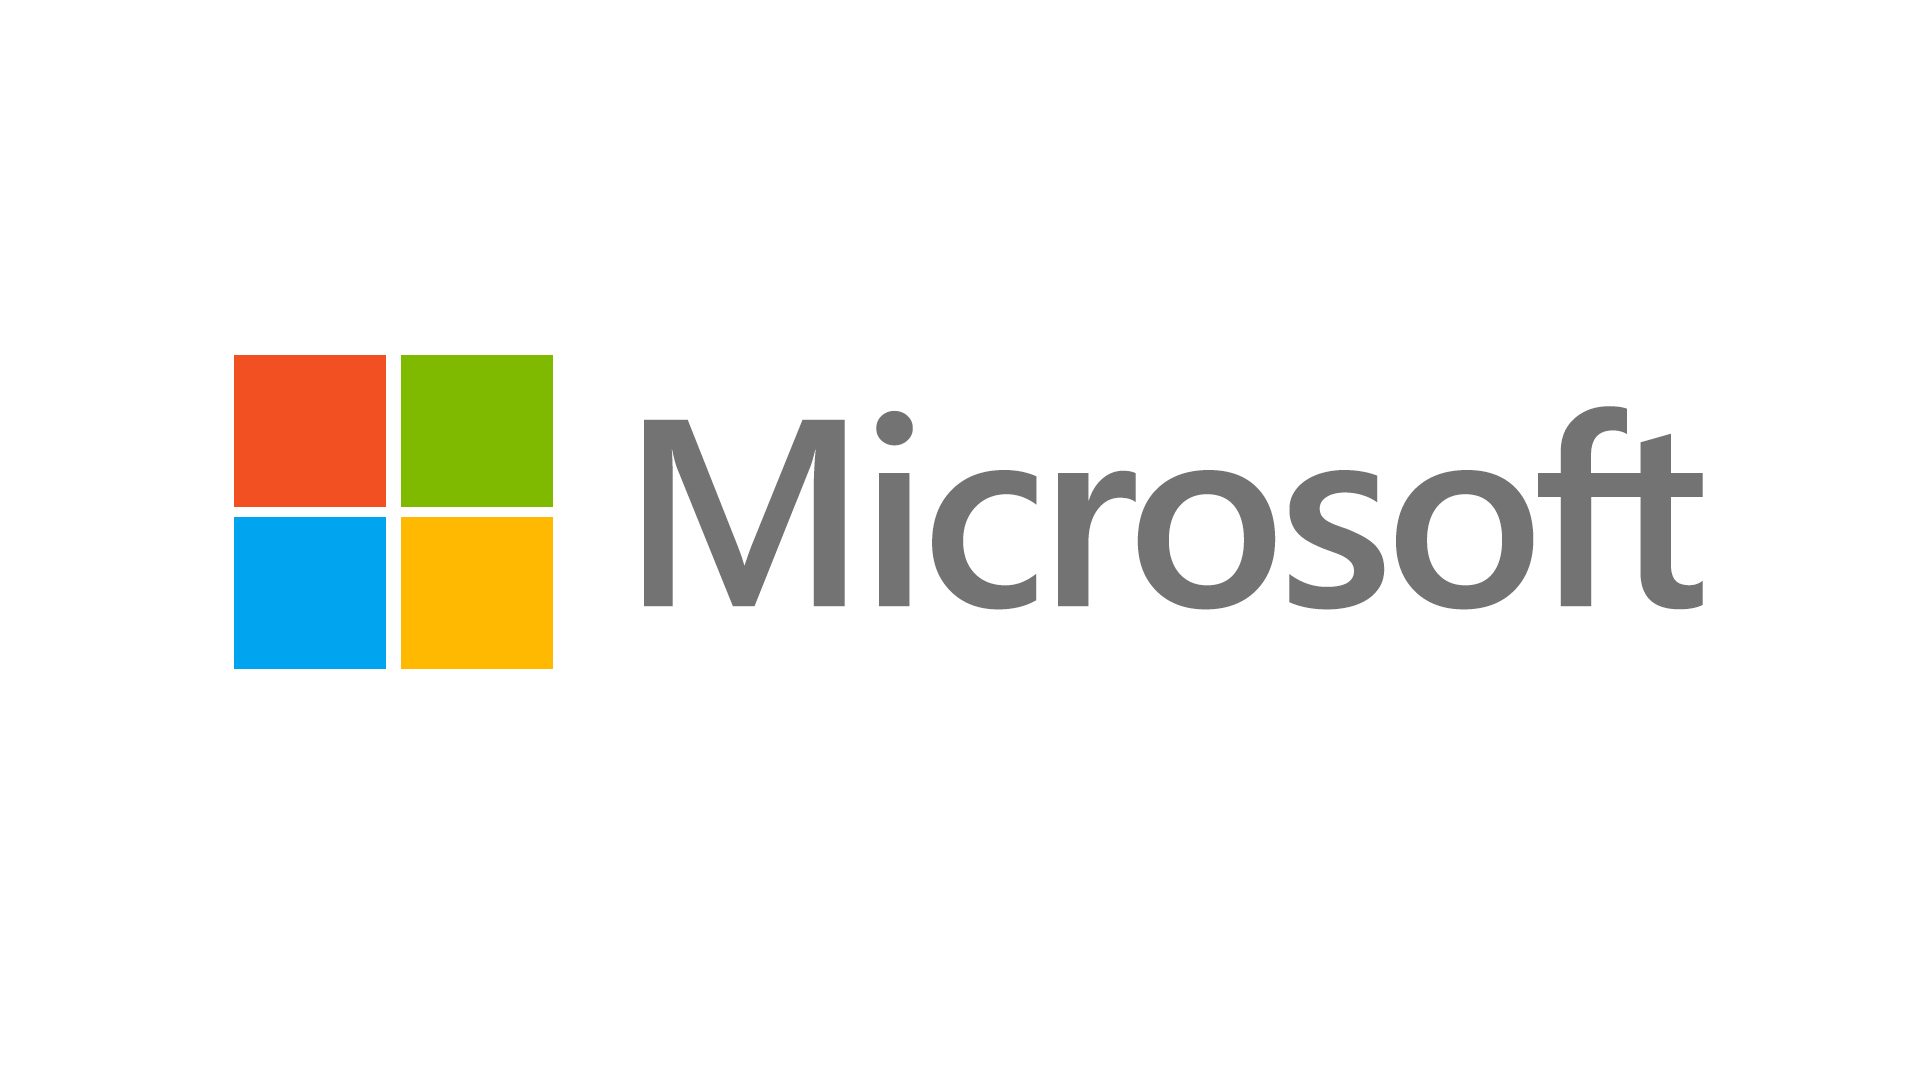 Sunt companiile care ofera aplicatii software parteneri Microsoft?